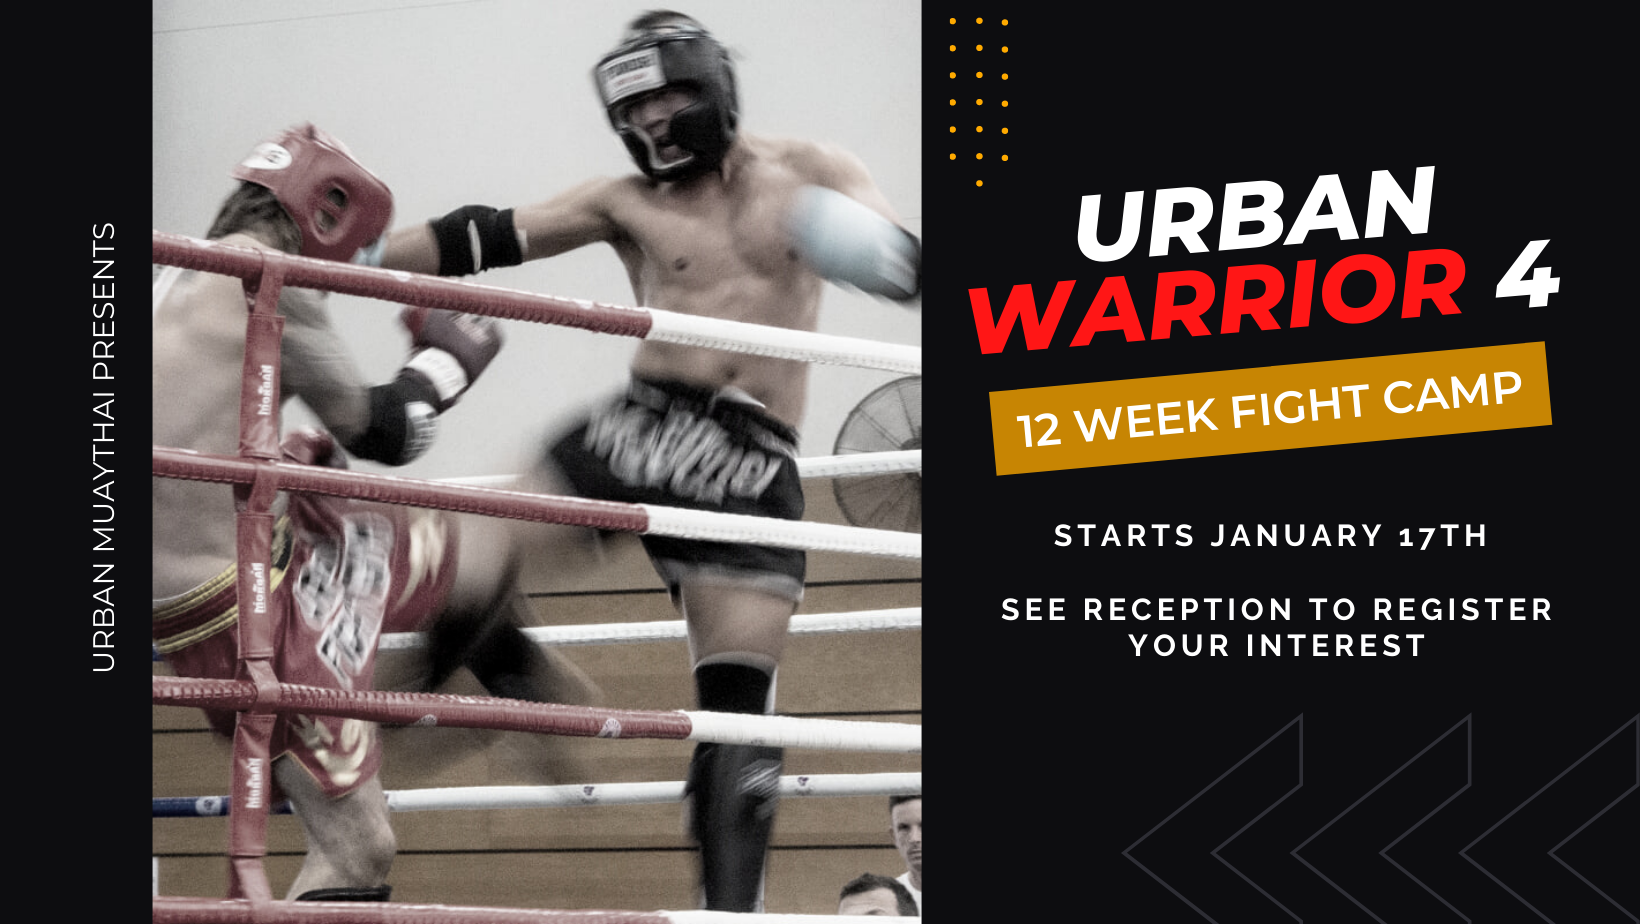 URBAN WARRIOR – 12 WEEK FIGHT CAMP